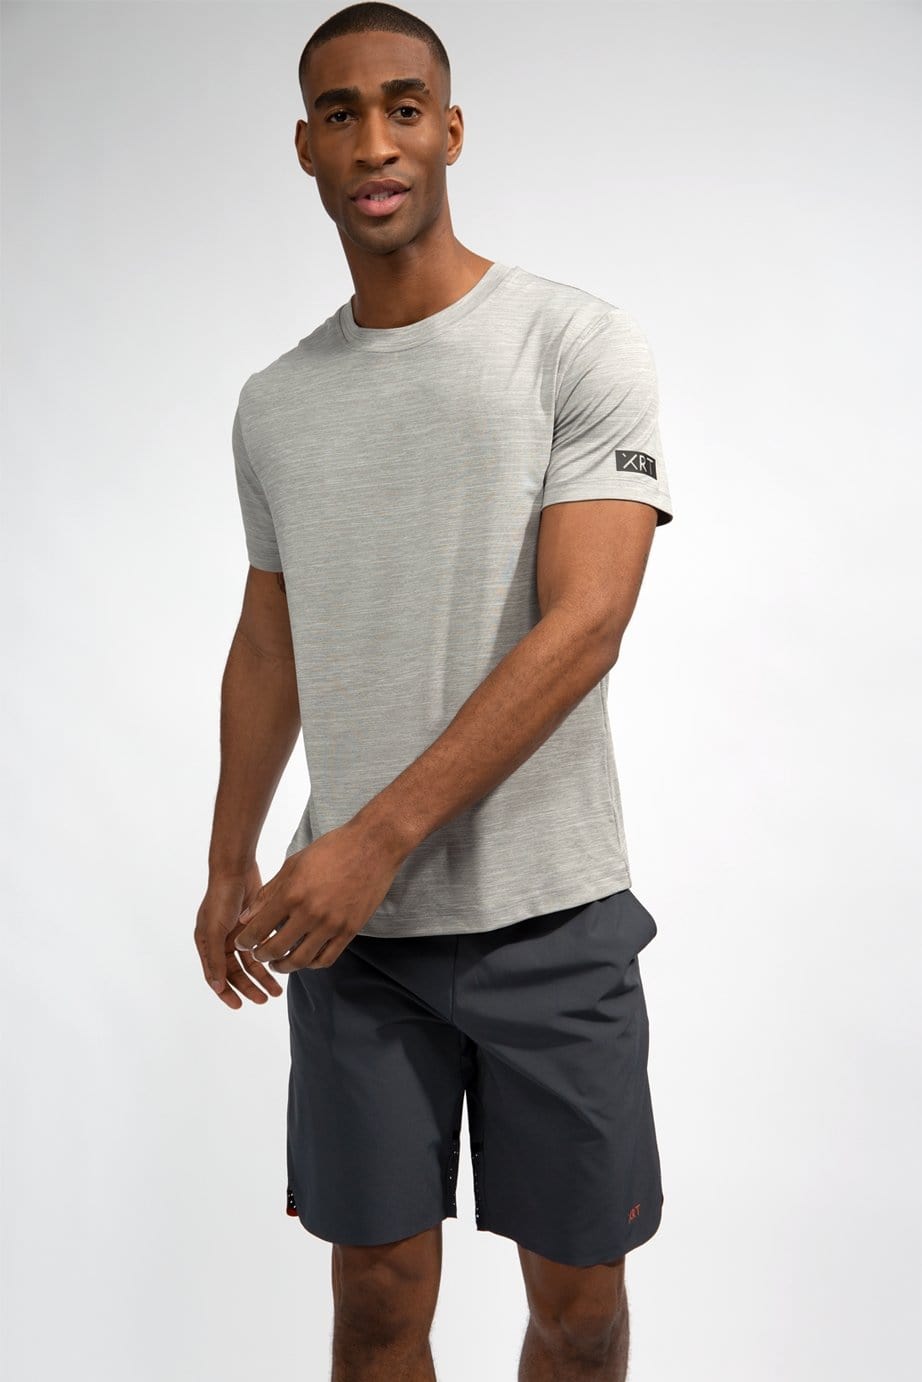 Grey XRT sport t-shirt for men